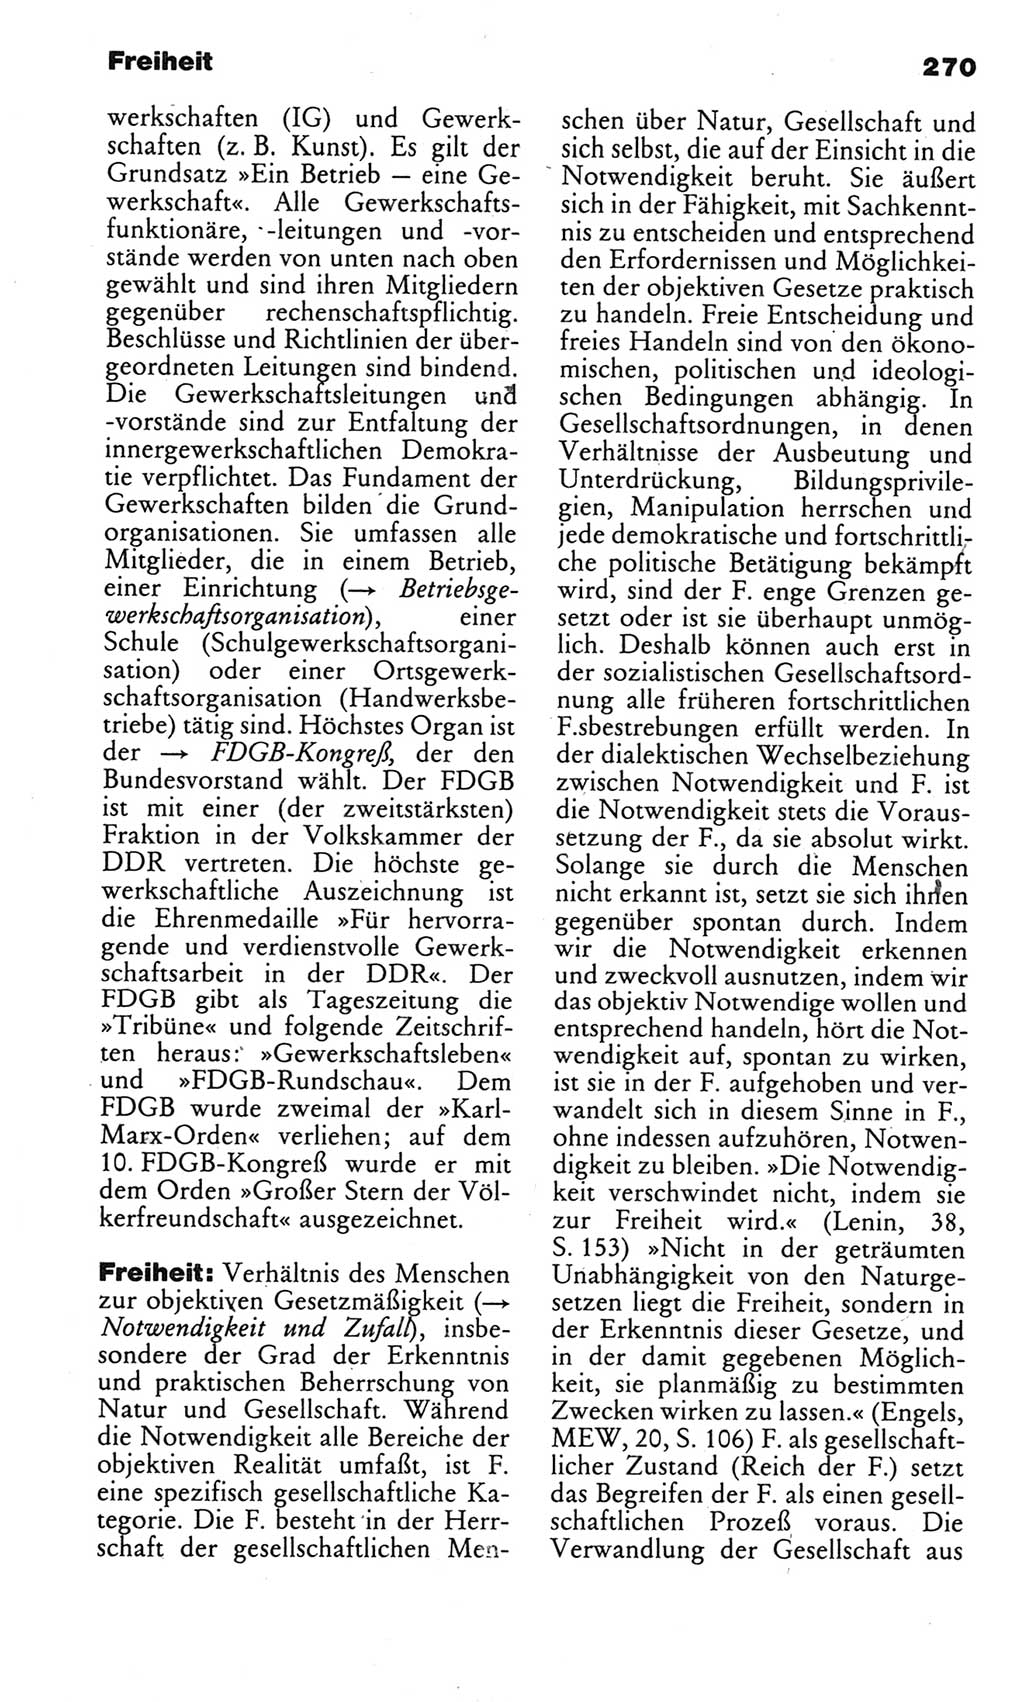 Kleines politisches Wörterbuch [Deutsche Demokratische Republik (DDR)] 1983, Seite 270 (Kl. pol. Wb. DDR 1983, S. 270)